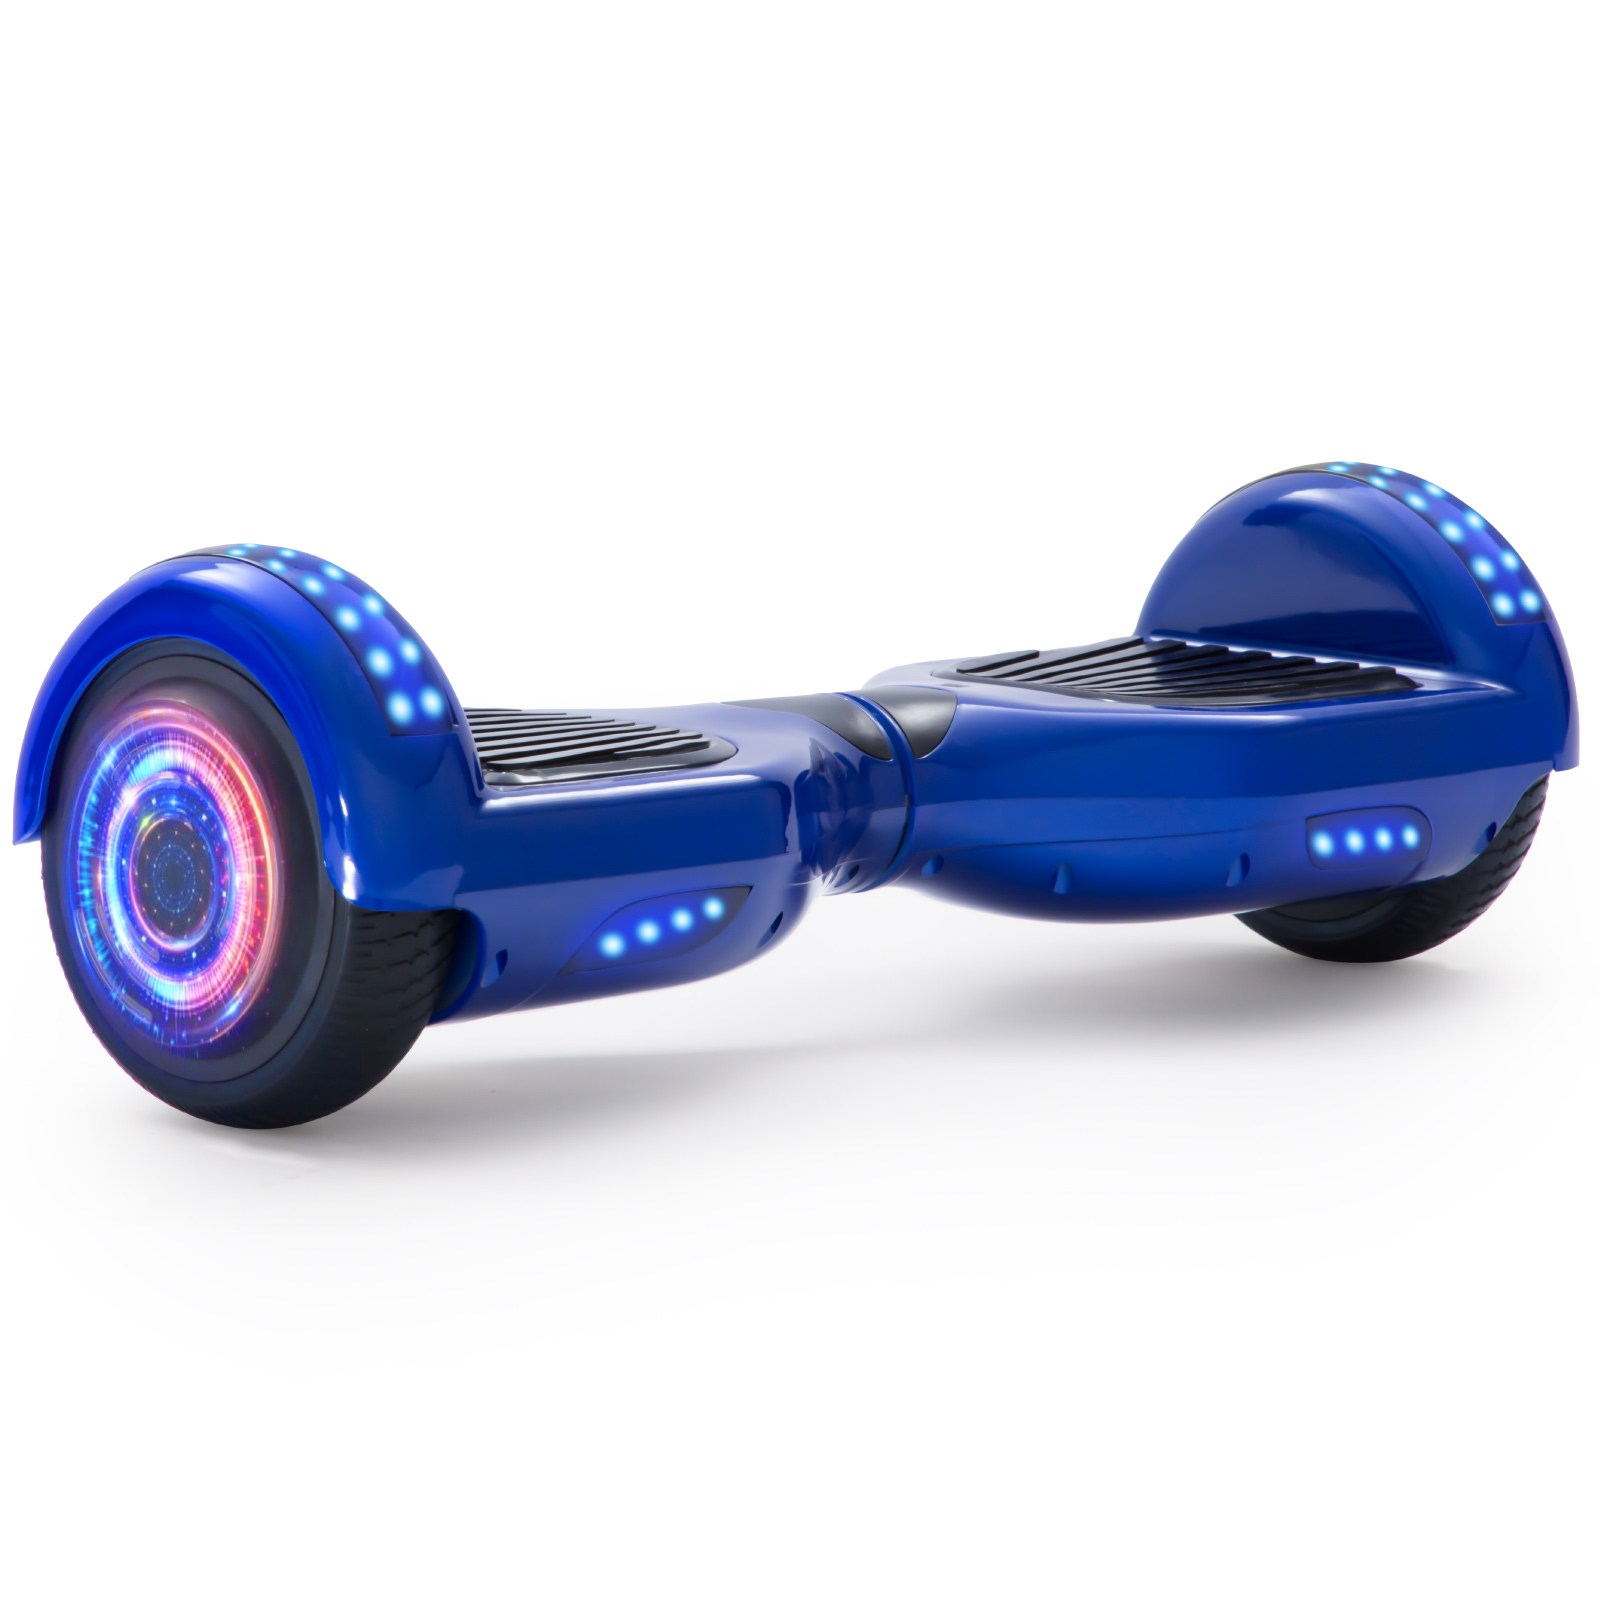 Neues 6,5" Hoverboard blau mit Bluetooth Musik Lautsprecher und LED Licht - 500W 12km/h